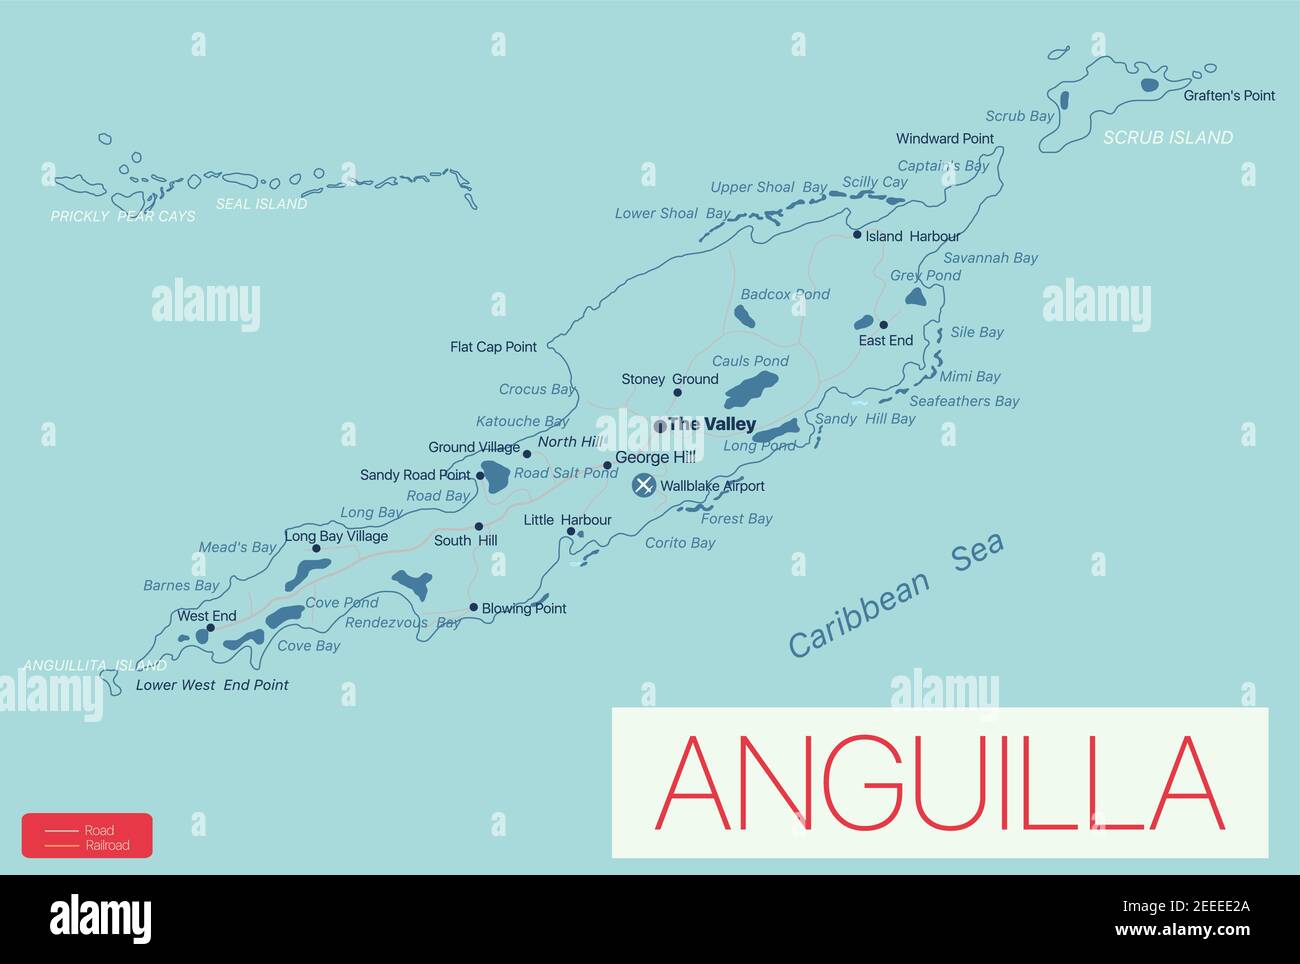 Anguilla carte détaillée modifiable avec régions villes, routes et chemins de fer, sites géographiques. Fichier vectoriel EPS-10 Illustration de Vecteur